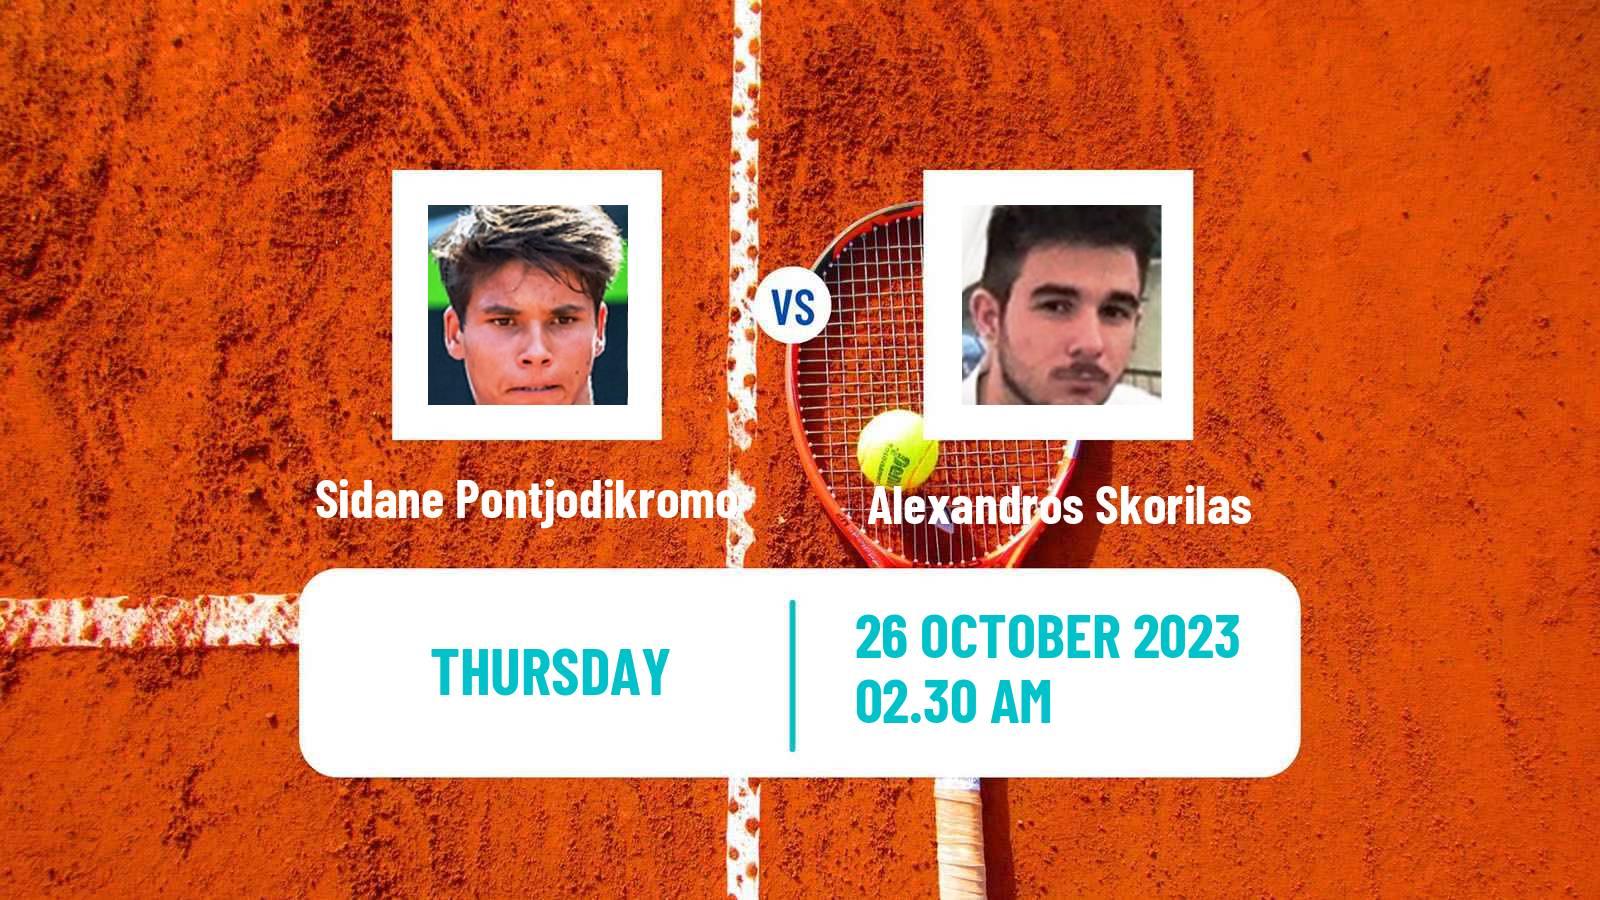 Tennis ITF M15 Heraklion 4 Men Sidane Pontjodikromo - Alexandros Skorilas